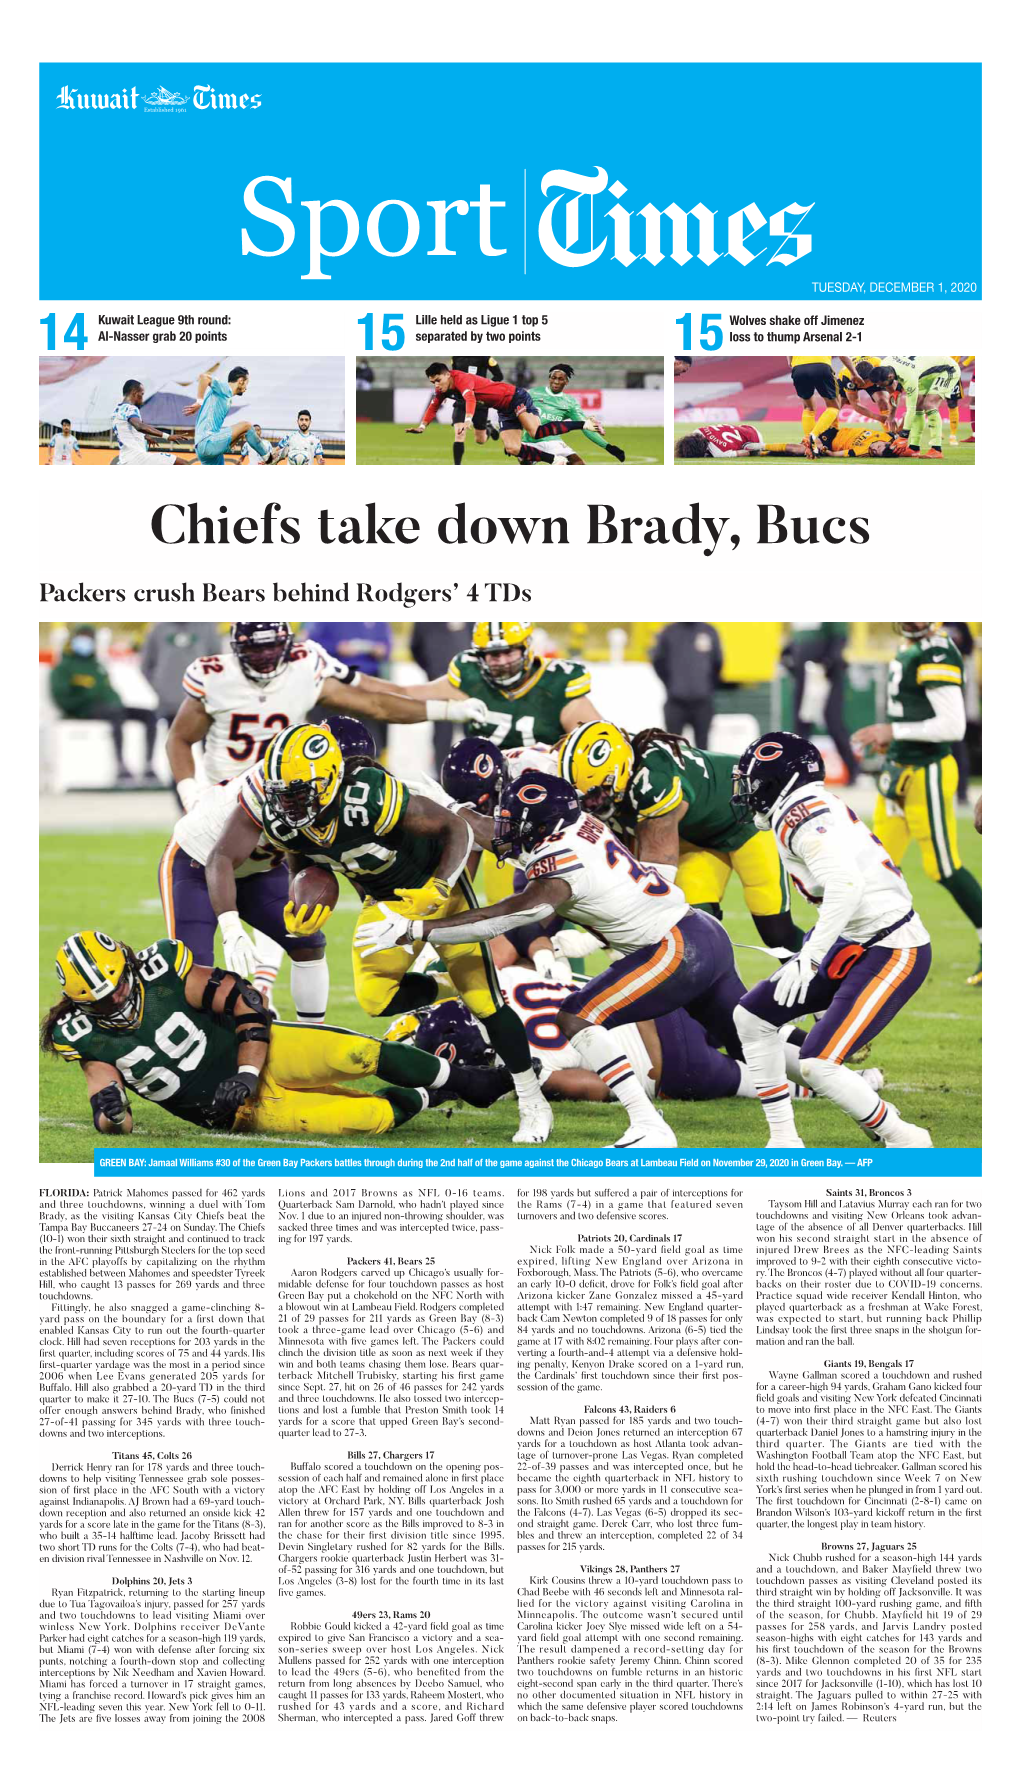 Chiefs Take Down Brady, Bucs